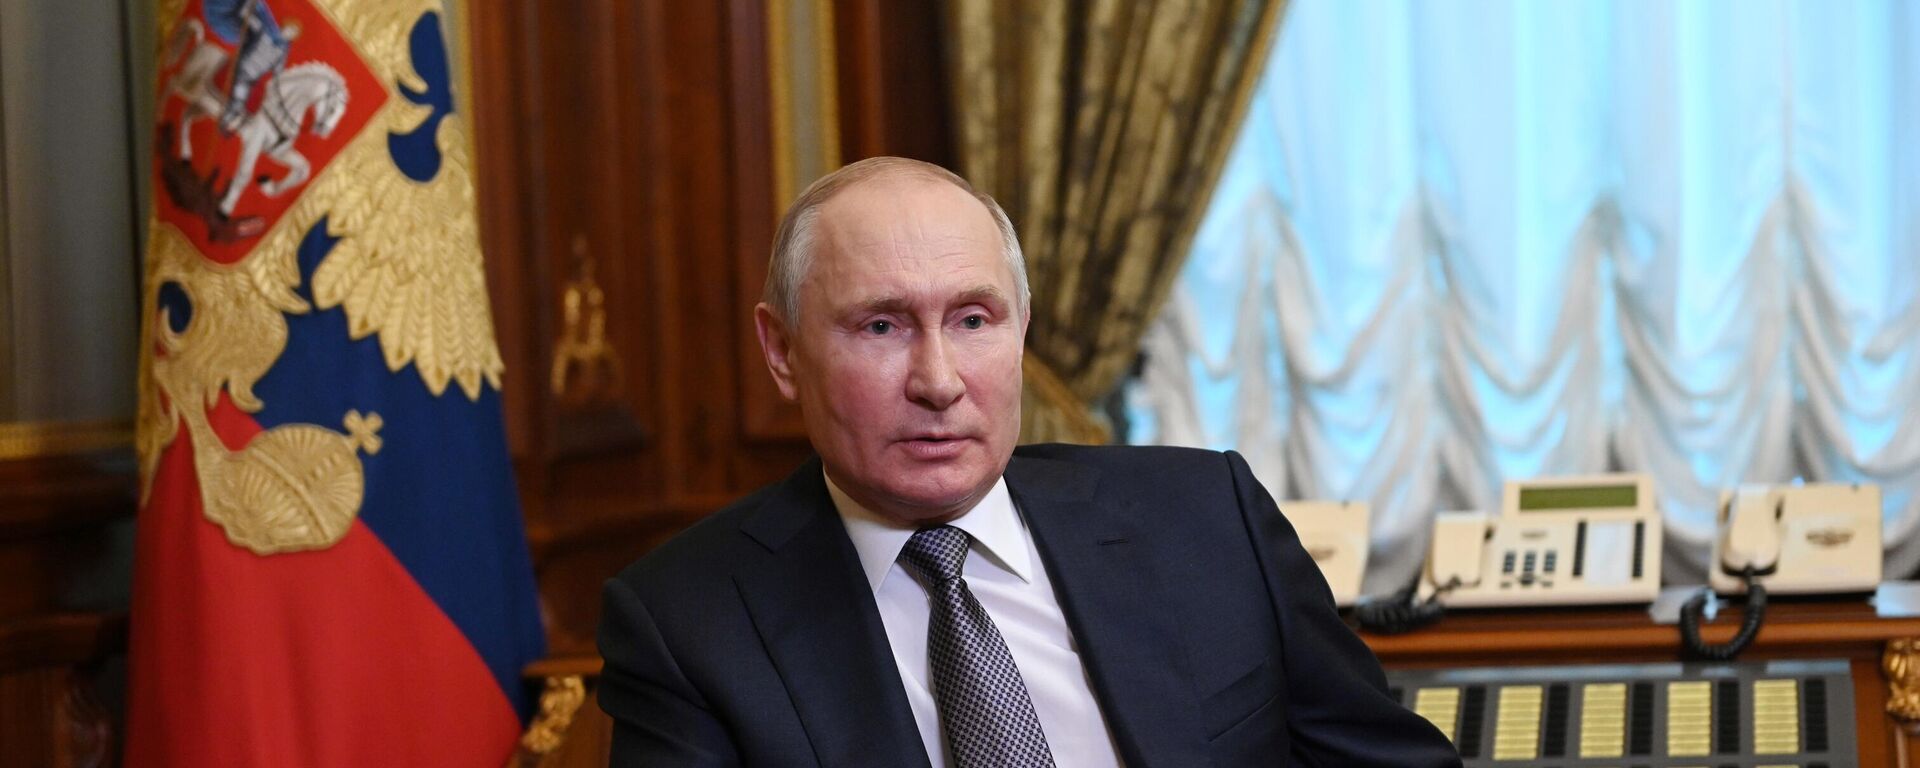 Президент России Владимир Путин, архивное фото - Sputnik Lietuva, 1920, 22.08.2021